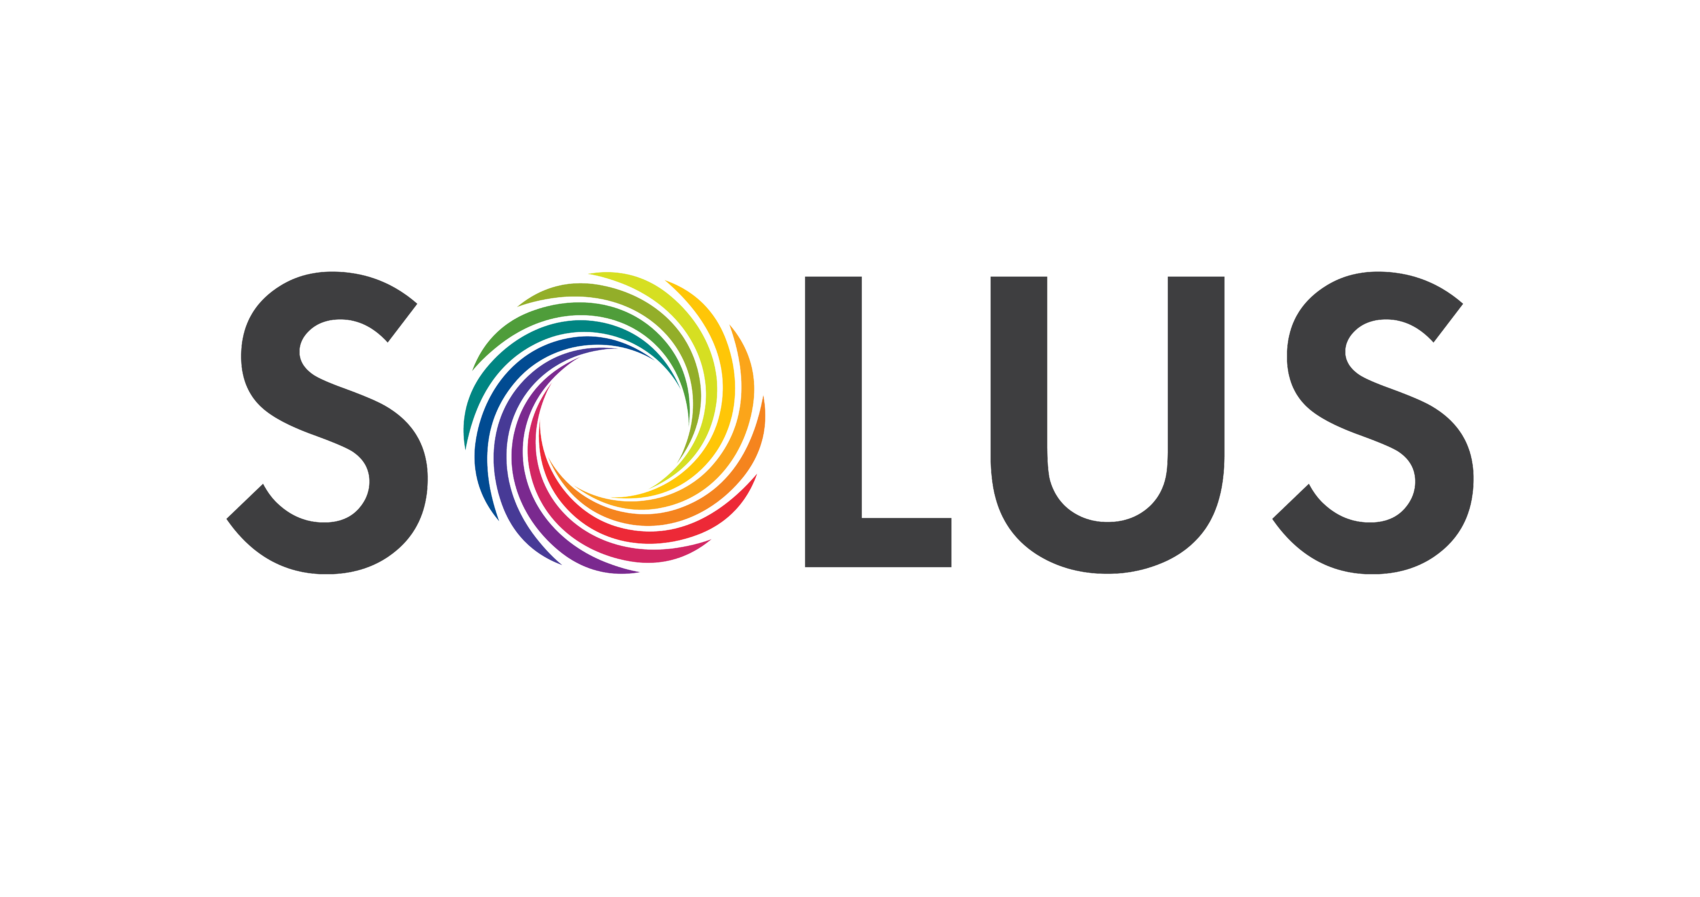 Final-Solus-Logo.png